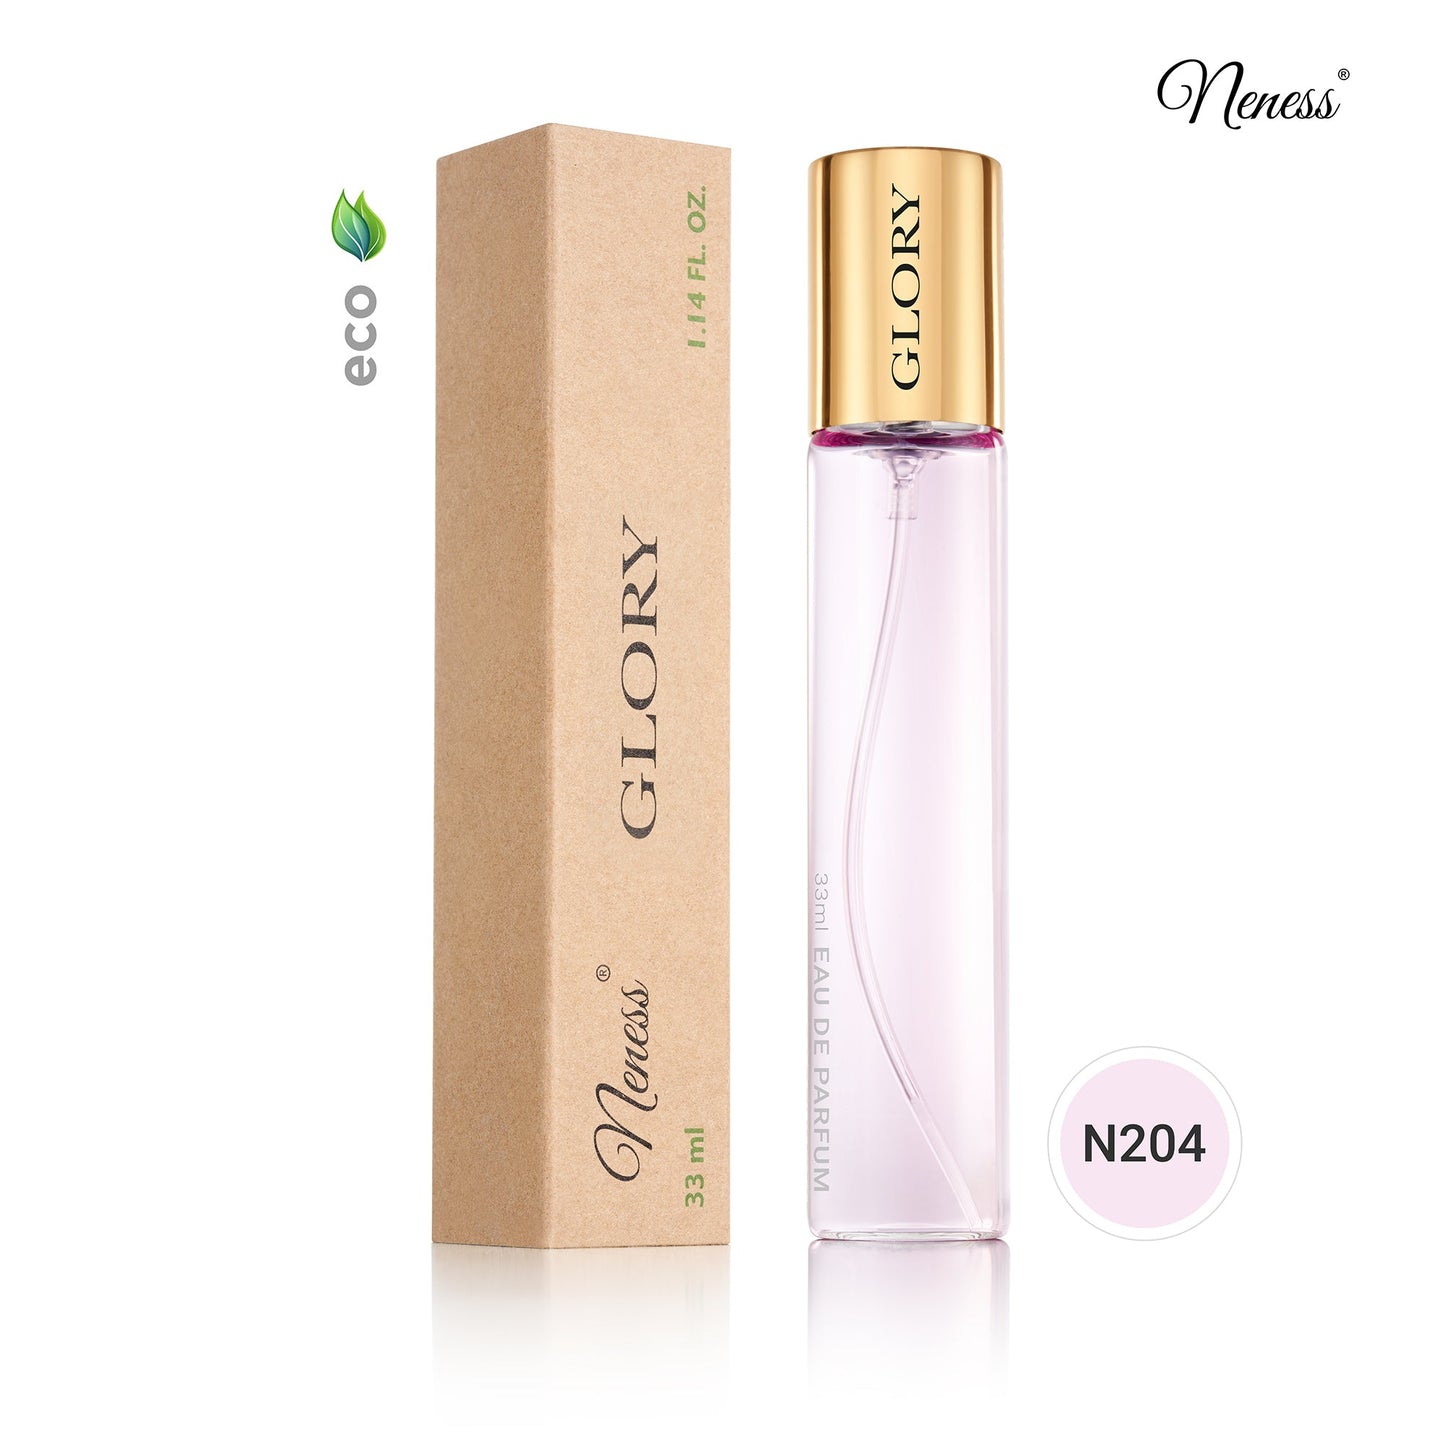 N204. Neness Glory - 33 ml - Parfum voor vrouwen